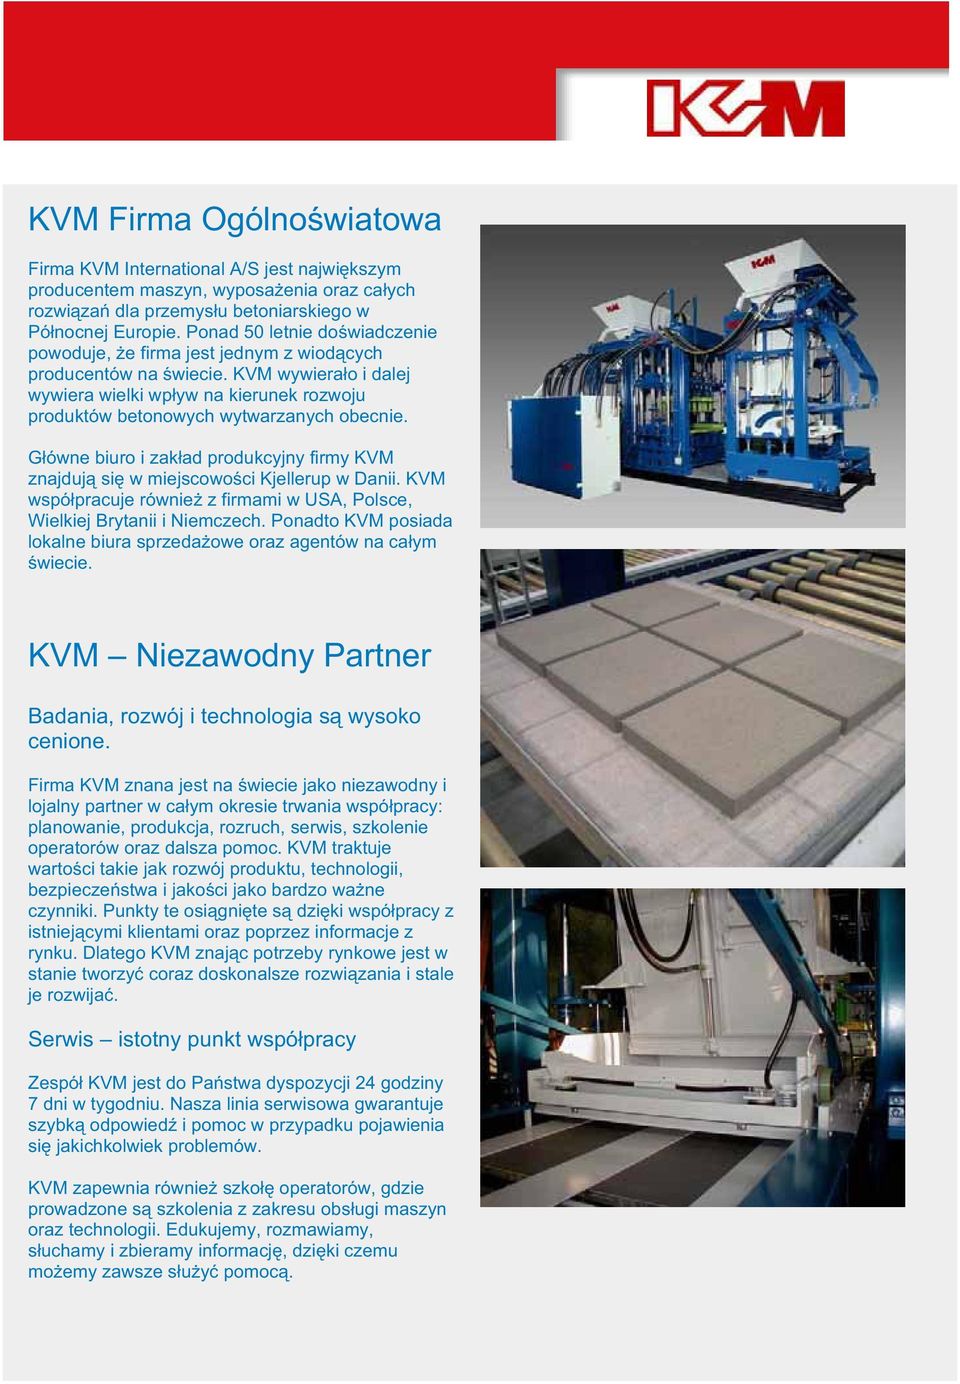 Gówne biuro i zakad produkcyjny firmy KVM znajduj si w miejscowoci Kjellerup w Danii. KVM wspópracuje równie z firmami w USA, Polsce, Wielkiej Brytanii i Niemczech.